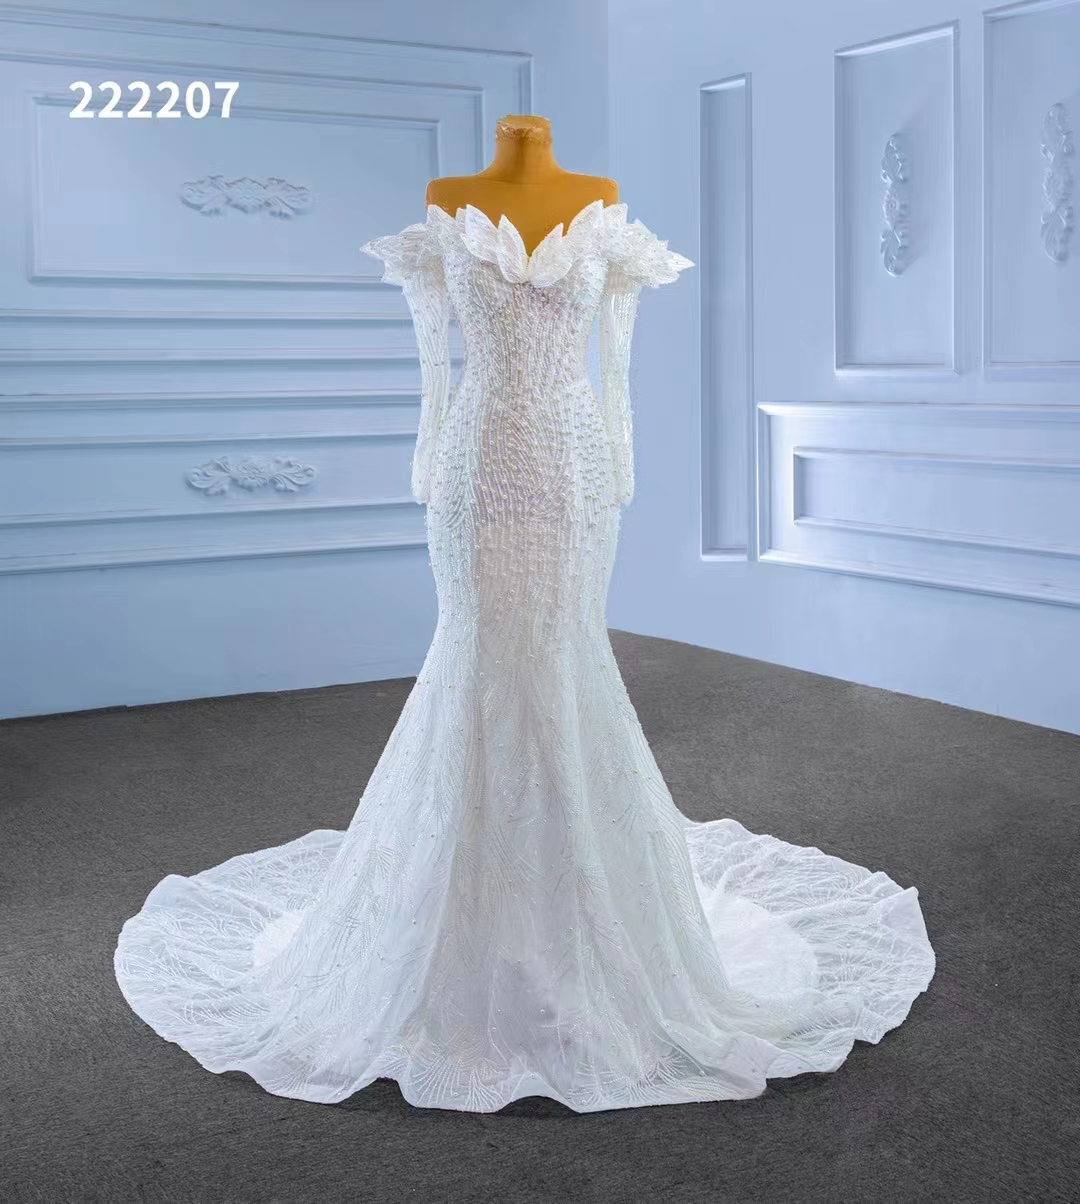 Марлей с длинным рукавом в одном плече показывает свадебное платье с высокой русалкой SM222207